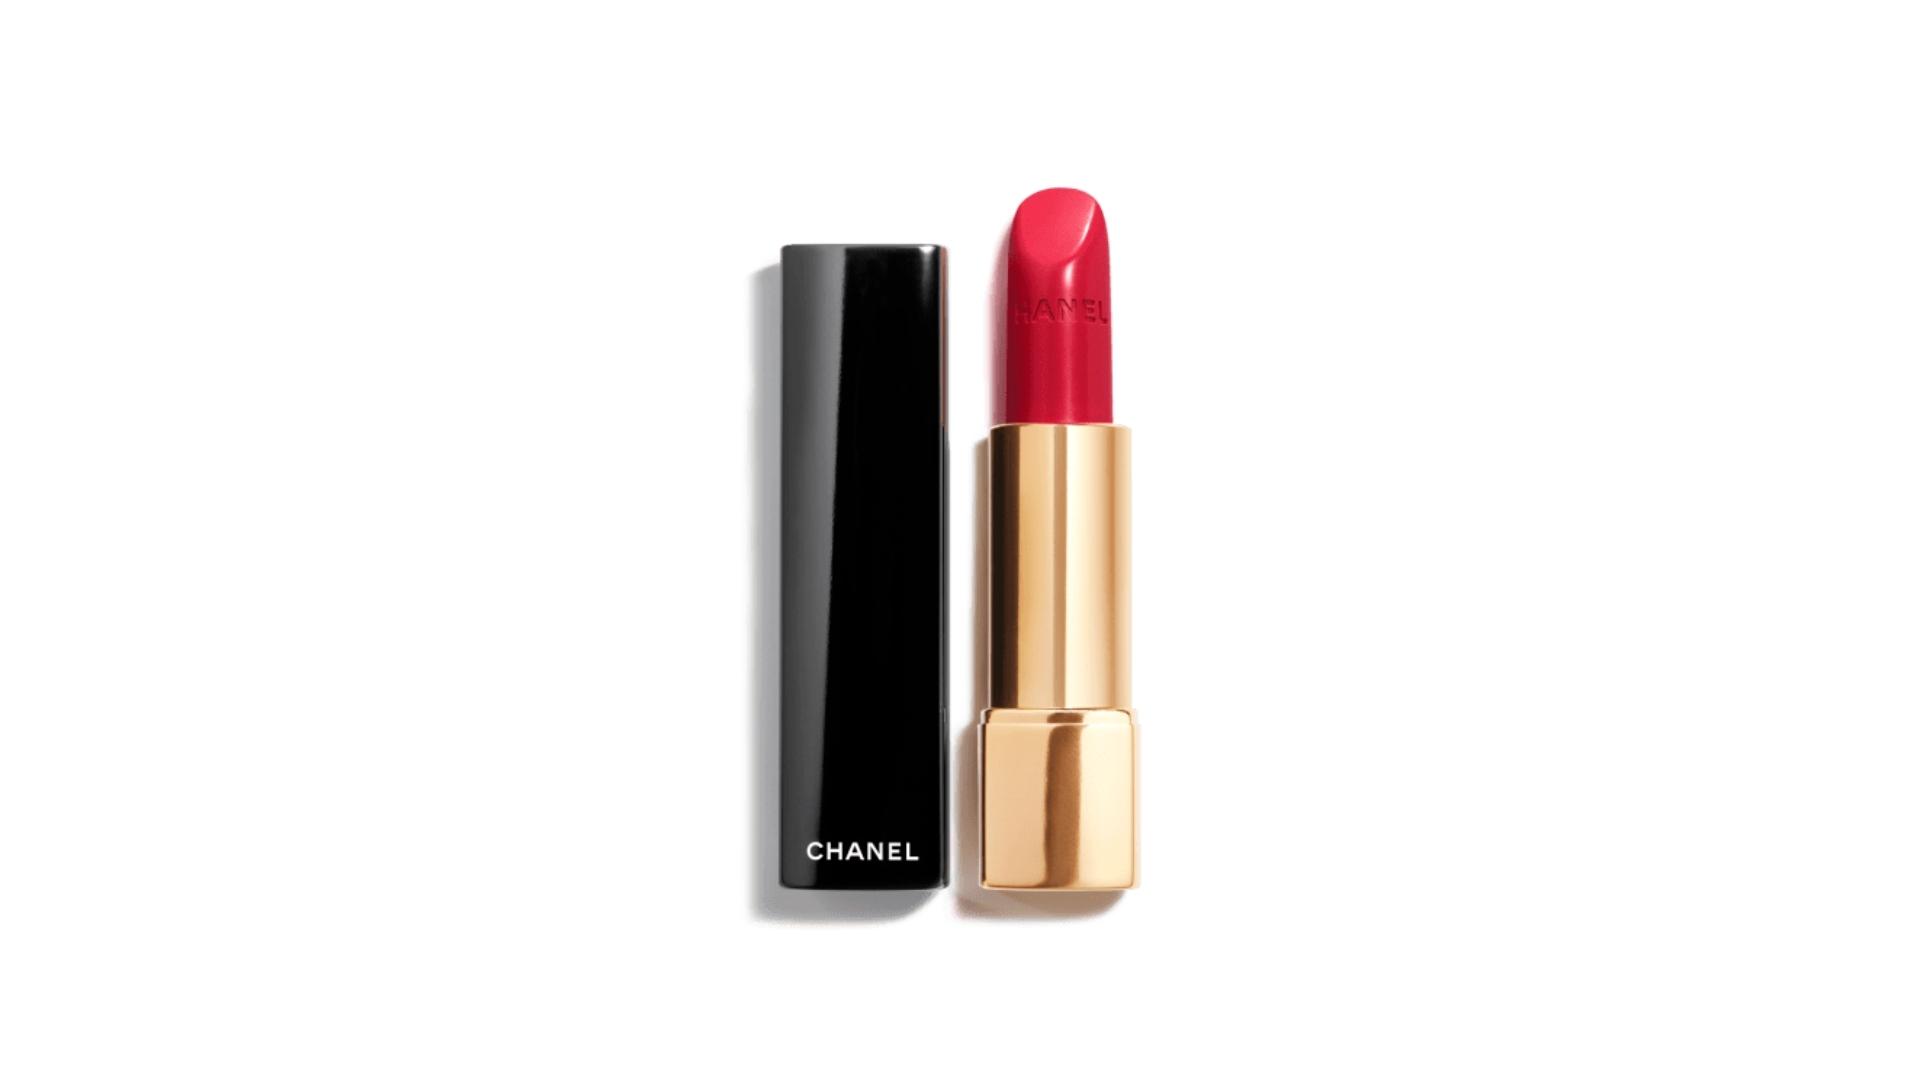 Chanel Rouge Allure Luminous Satin Lip Color Colour Lipstick - Pirate No. 99